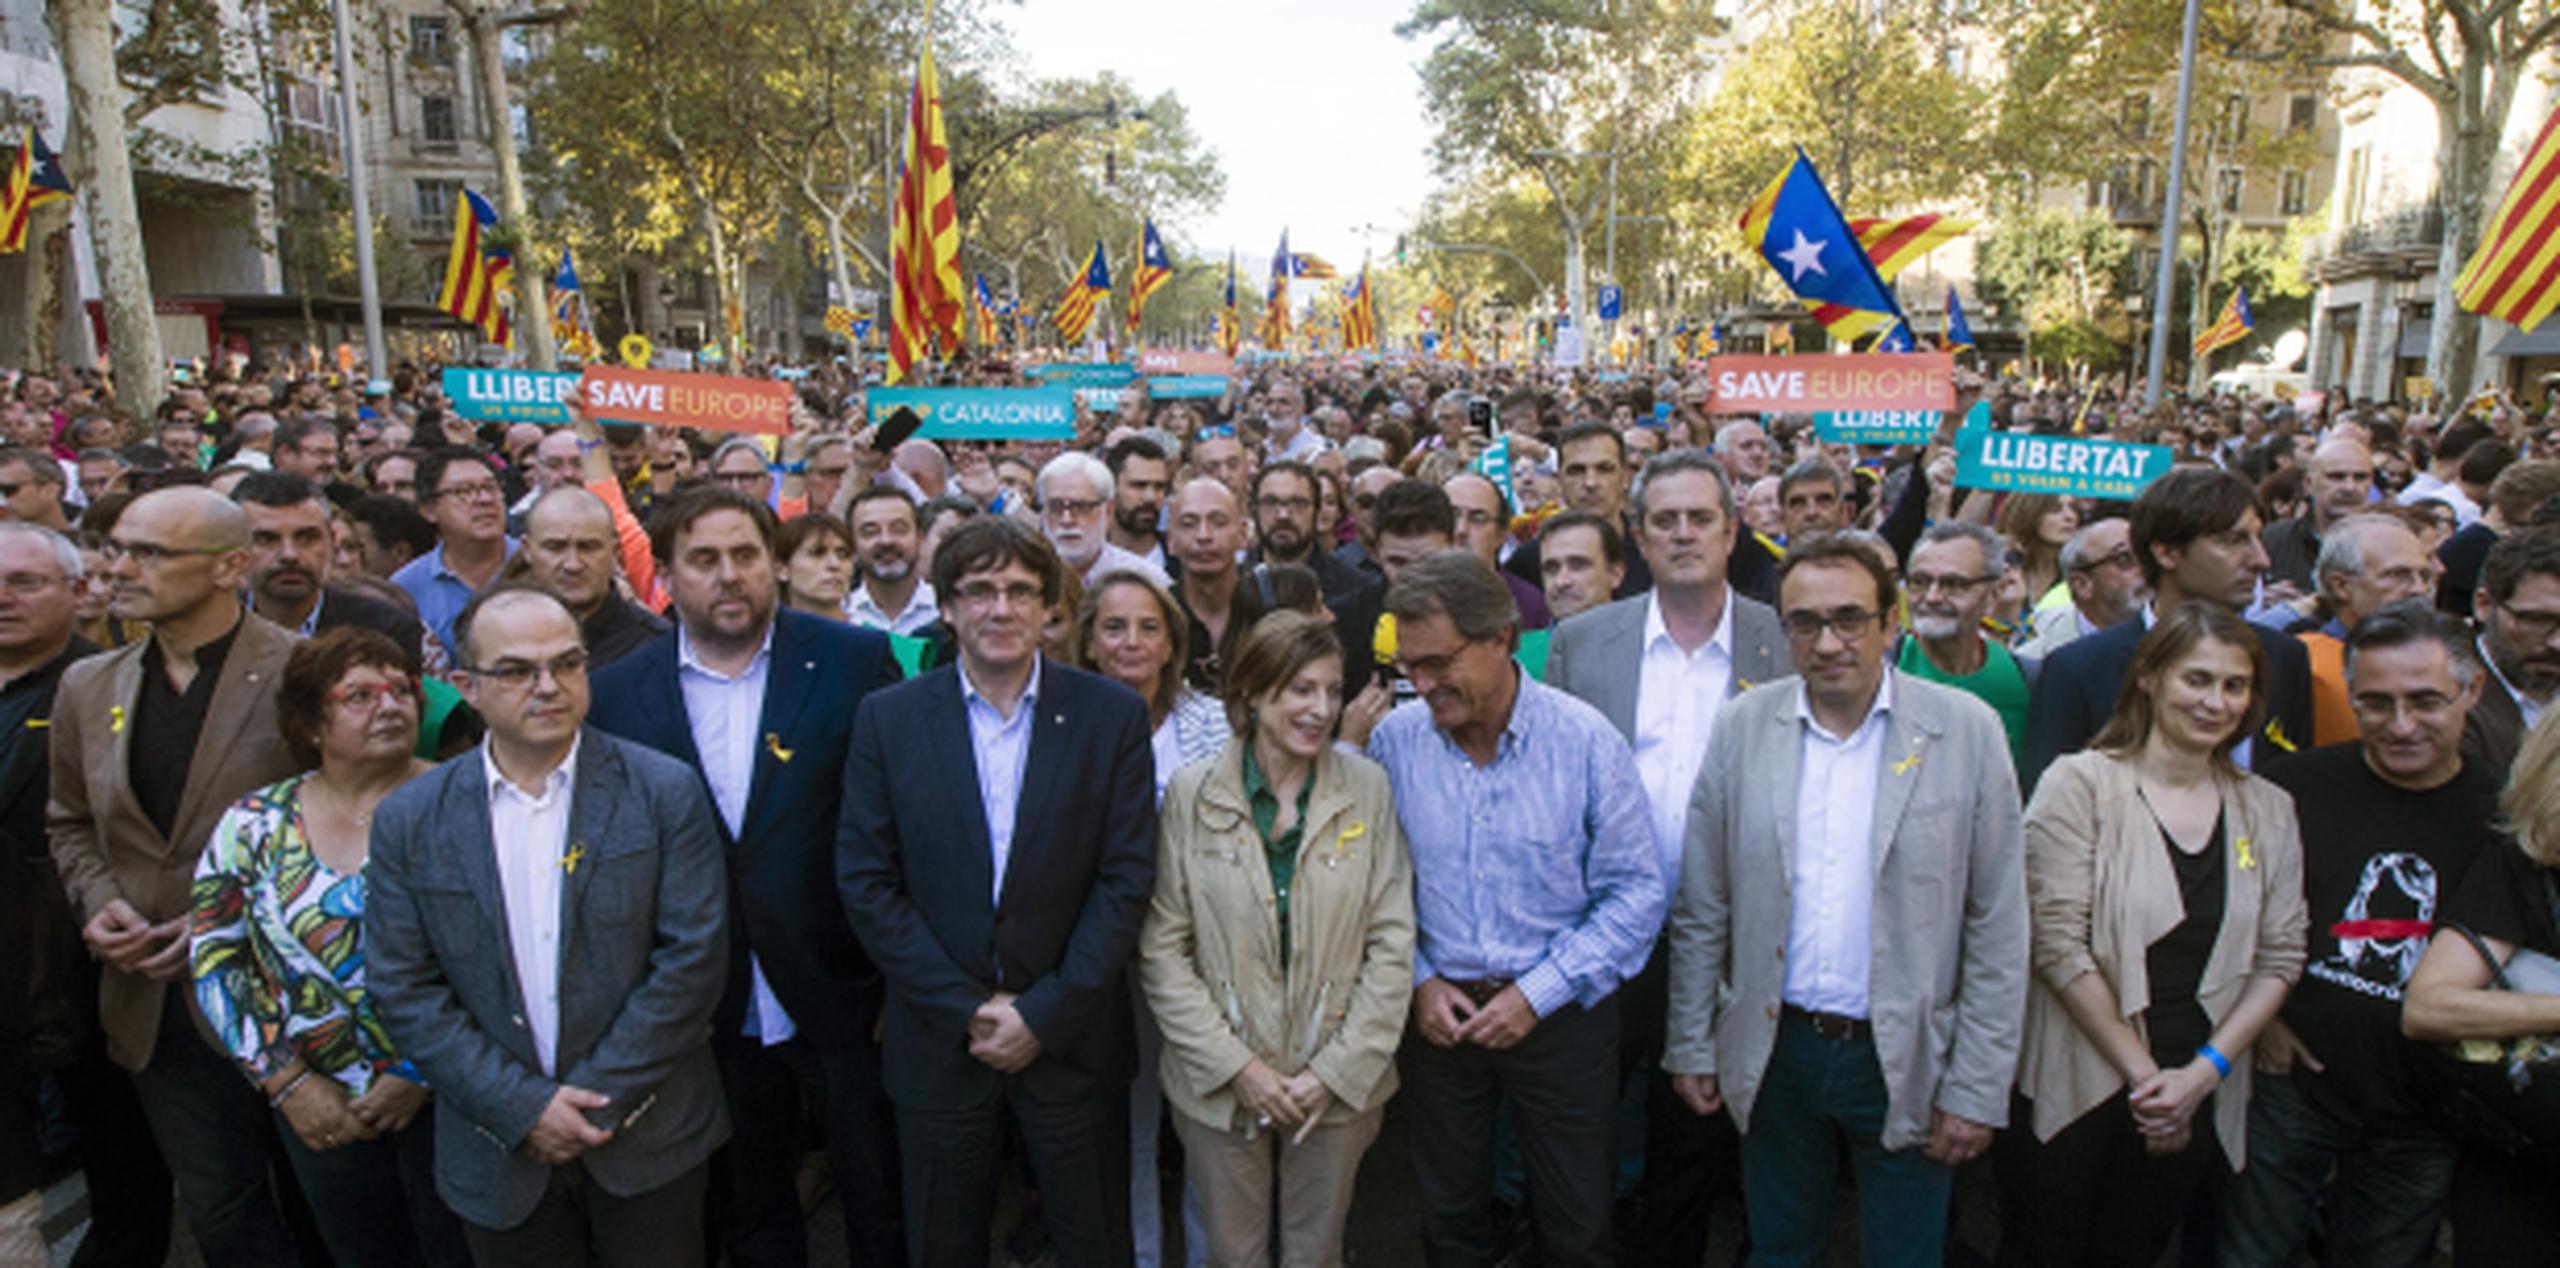 Miles de personas se han lanzado a la calle en Barcelona para protestar en favor de la independencia de Cataluña. (EFE/Quique García)
